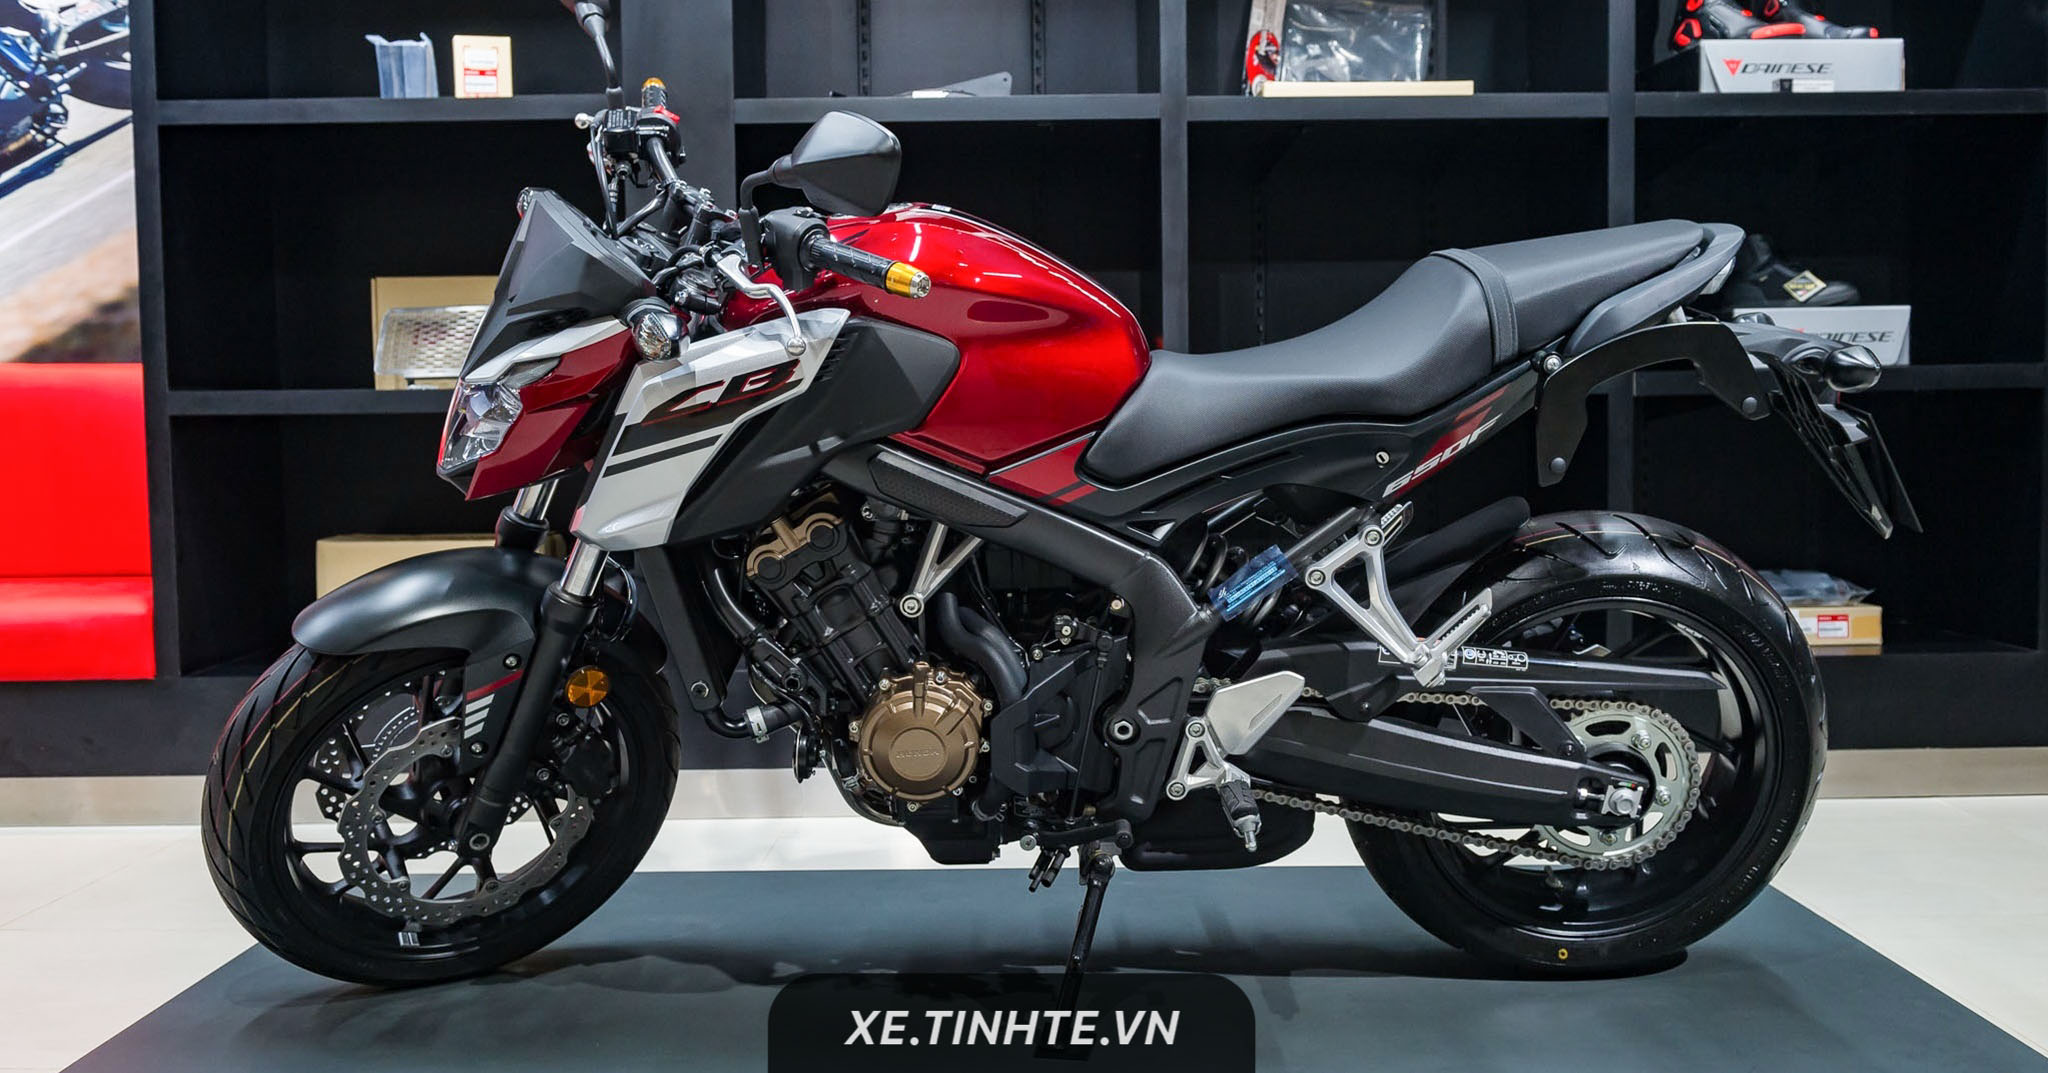 Honda Việt Nam chính thức phân phối xe mô tô, dung tích từ 500cc trở lên,  giá từ 172 triệu